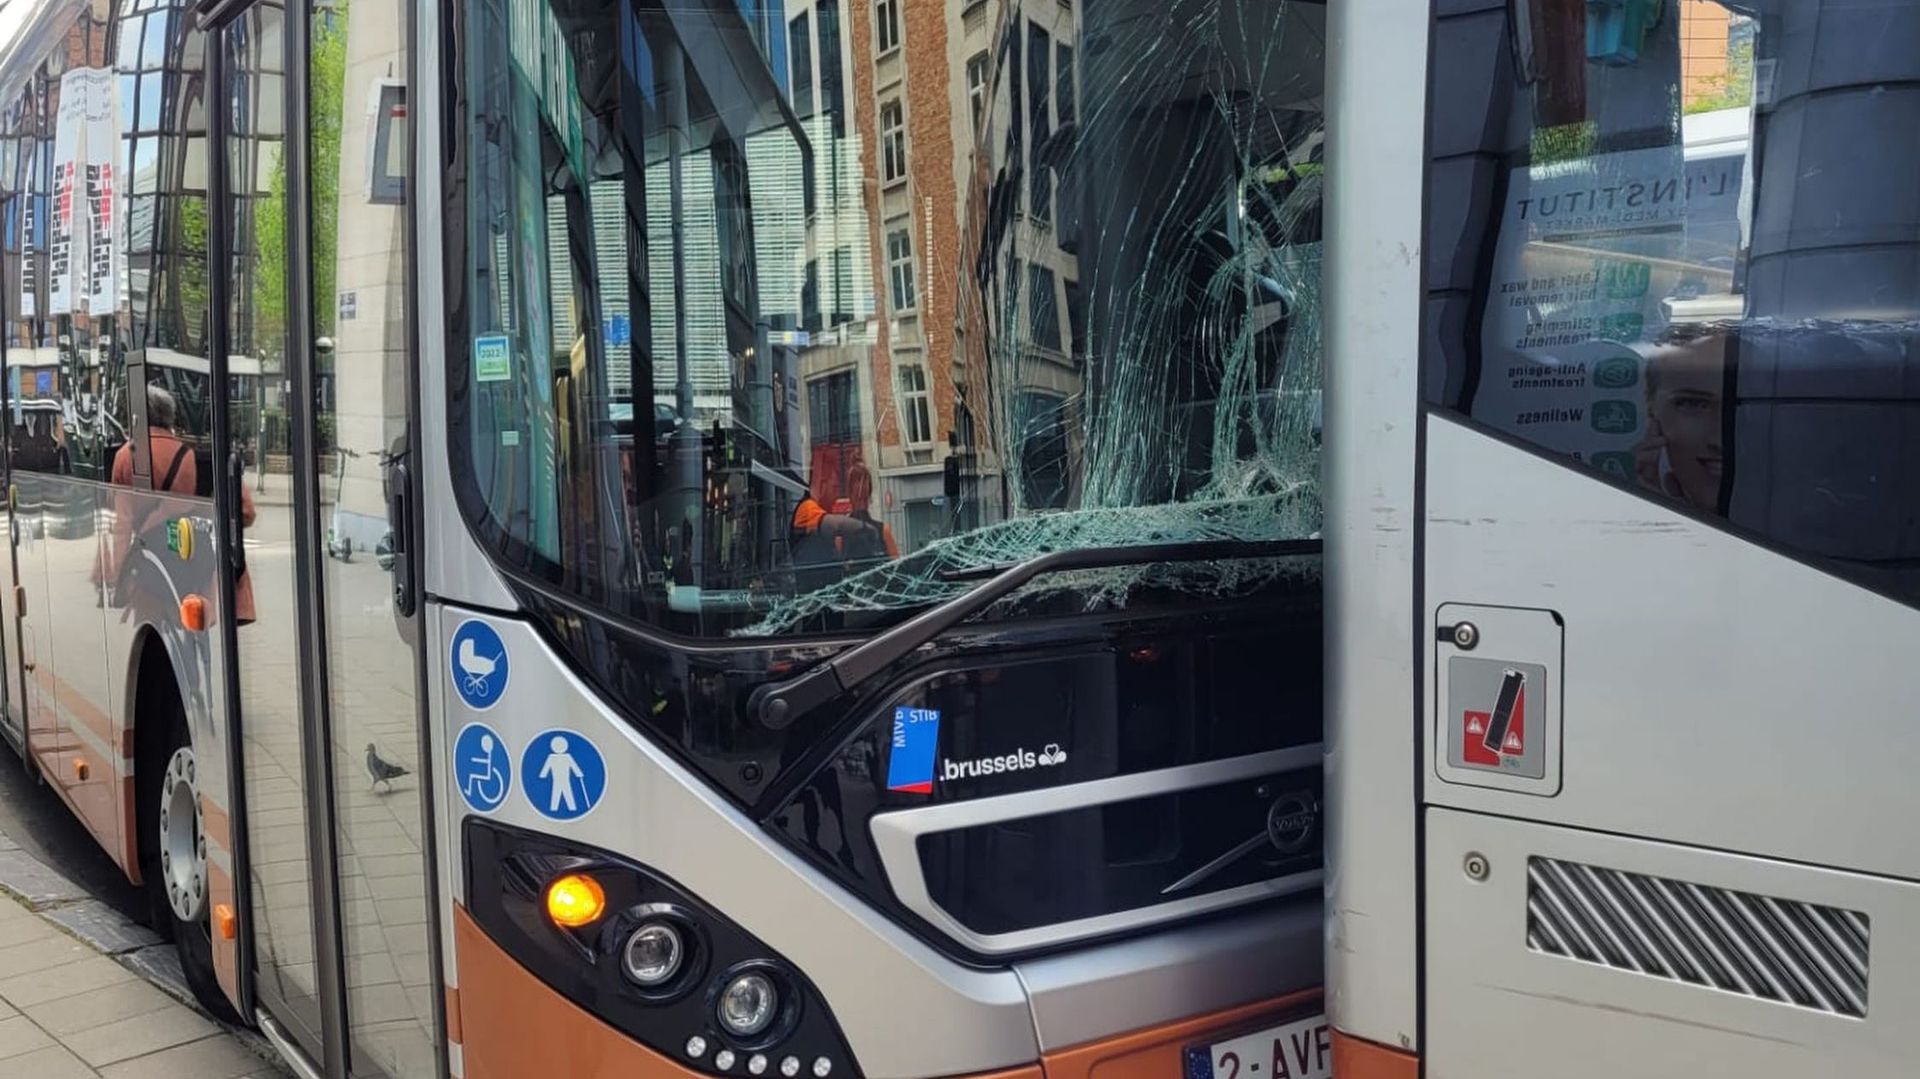 Deux bus de la ligne 36 sont impliqués dans cet accident.